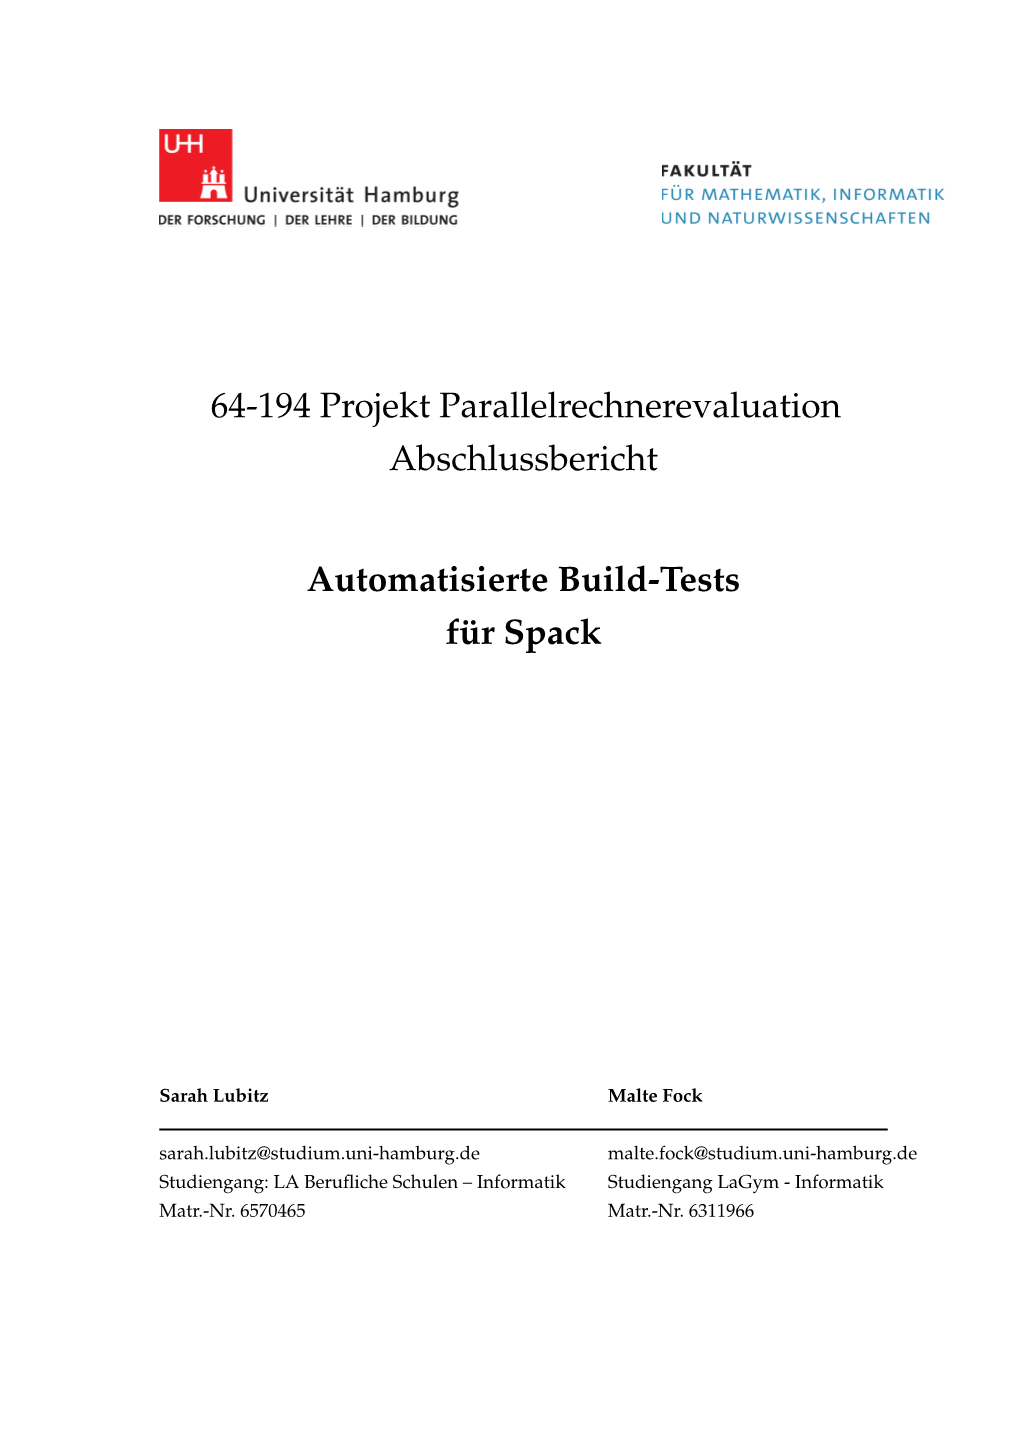 64-194 Projekt Parallelrechnerevaluation Abschlussbericht